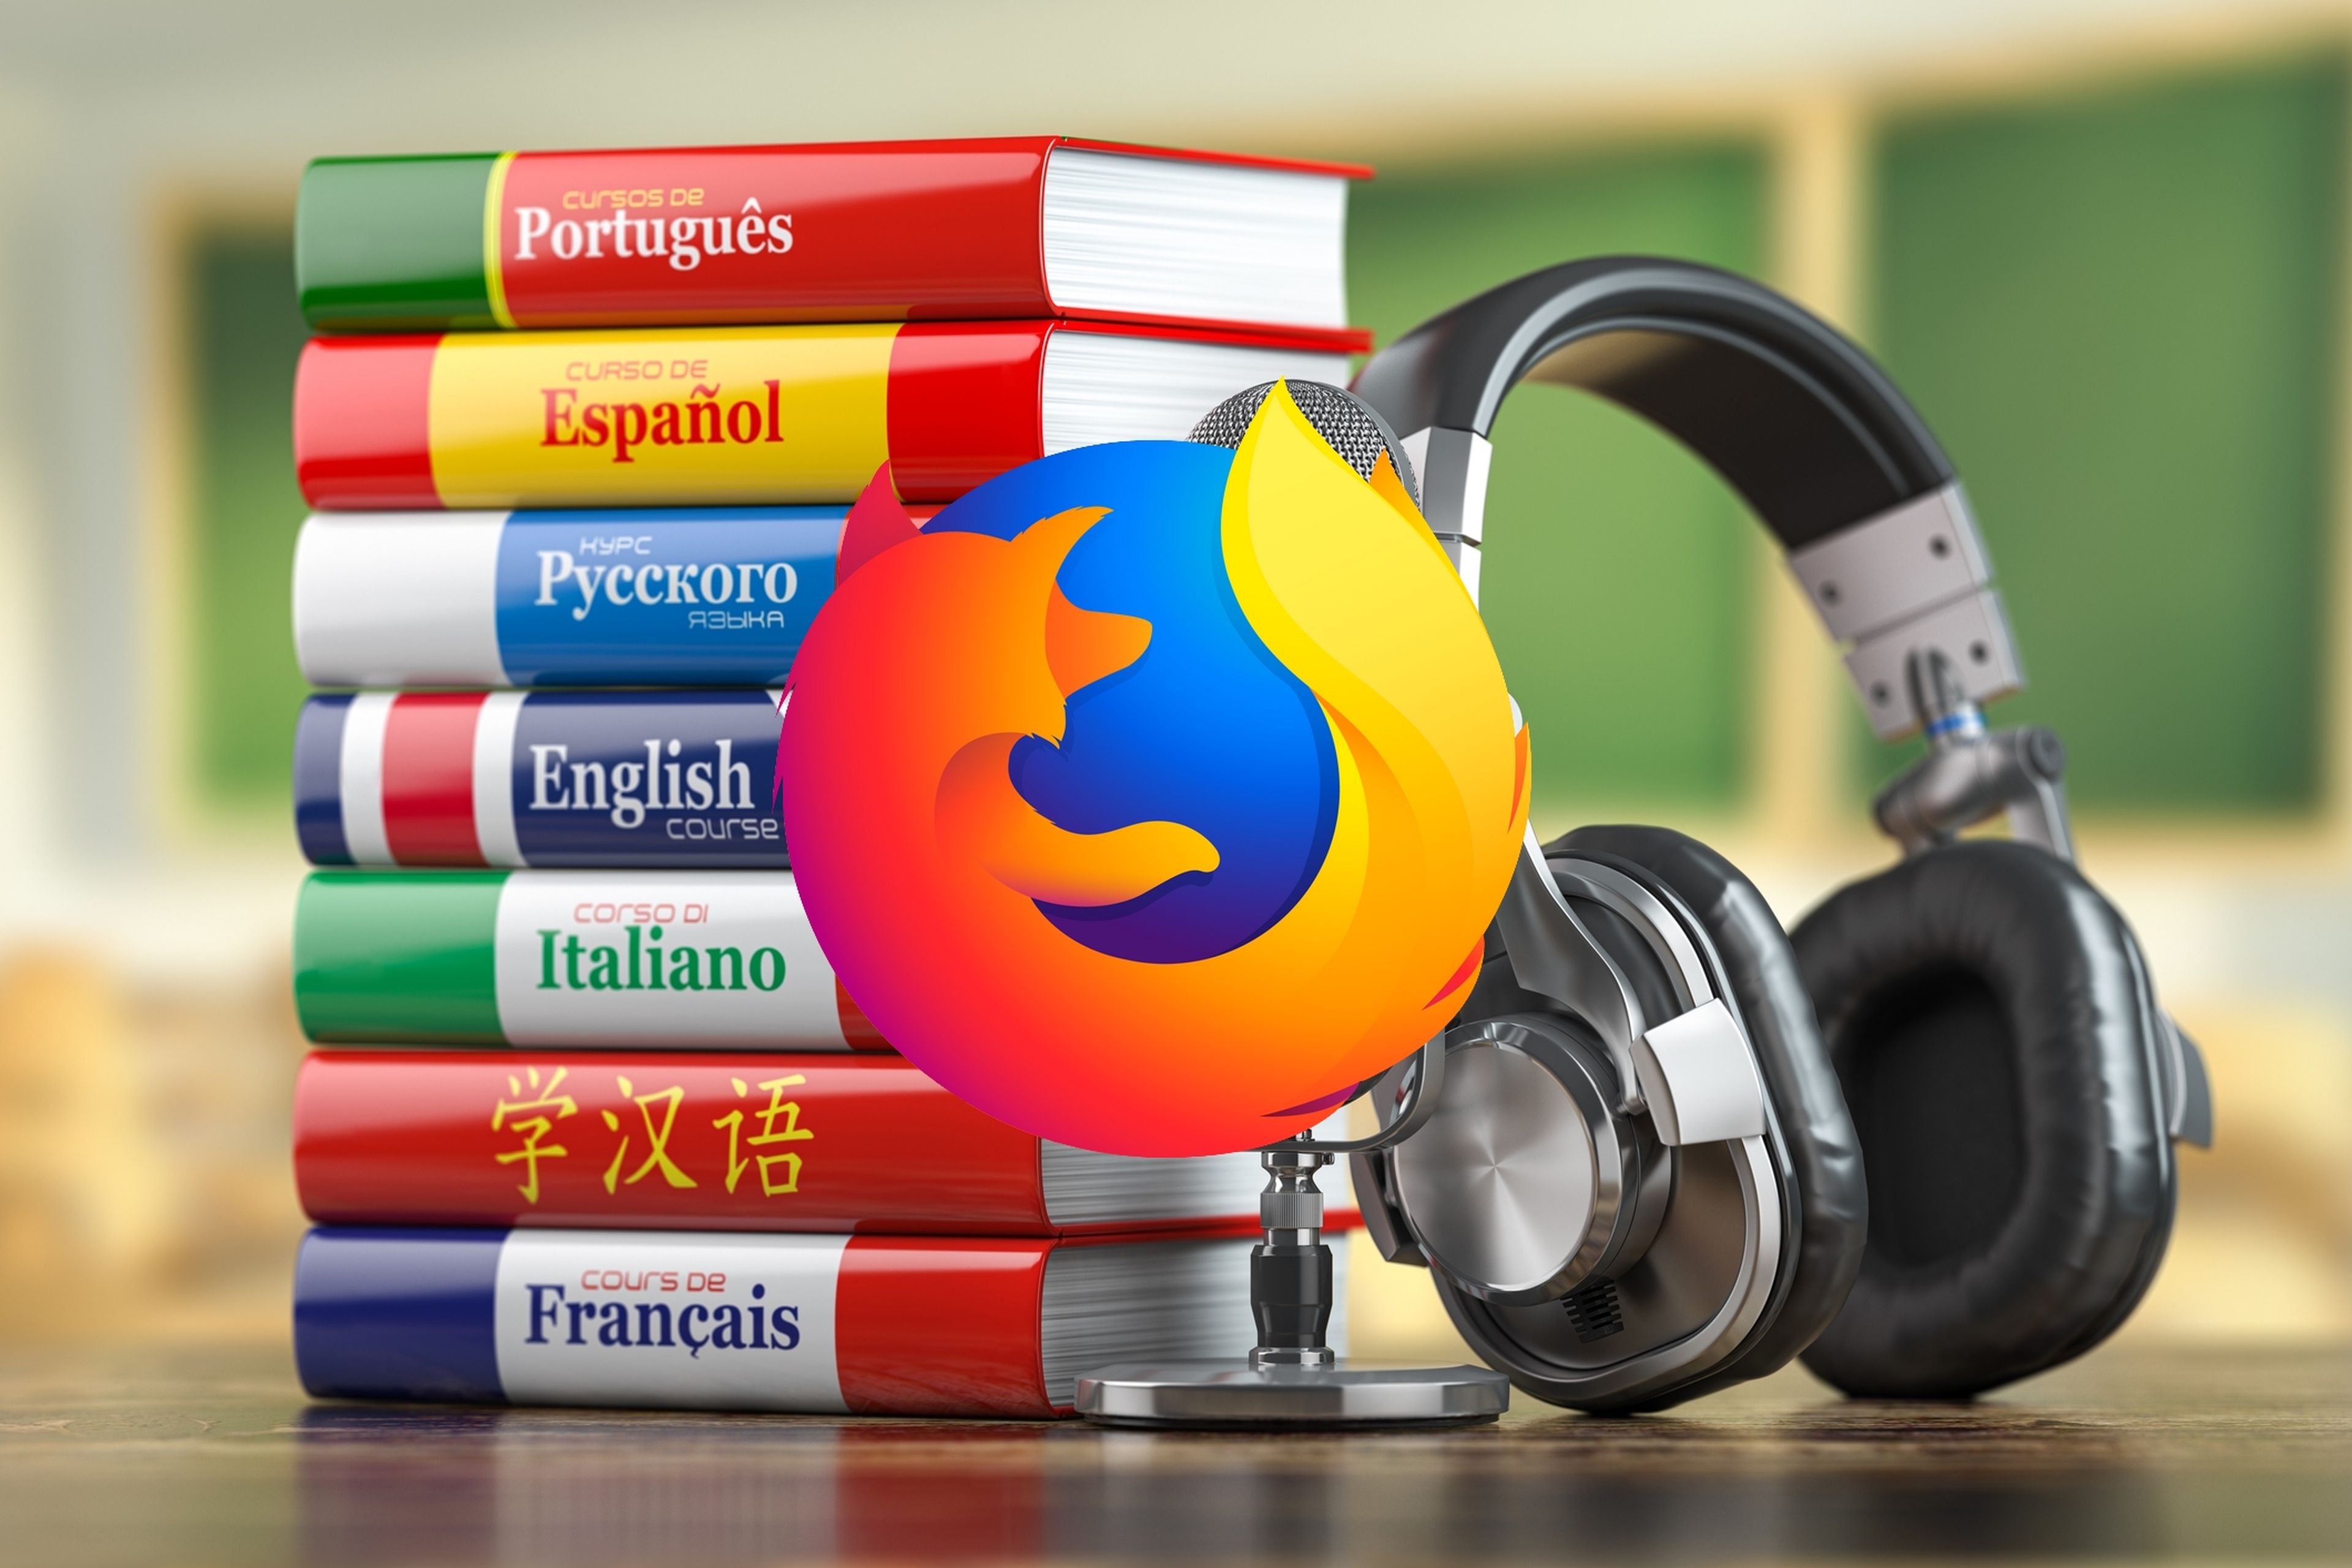 Firefox ya permite traducir textos a 12 idiomas sin necesidad de conectarse a Internet, un gran avance en privacidad